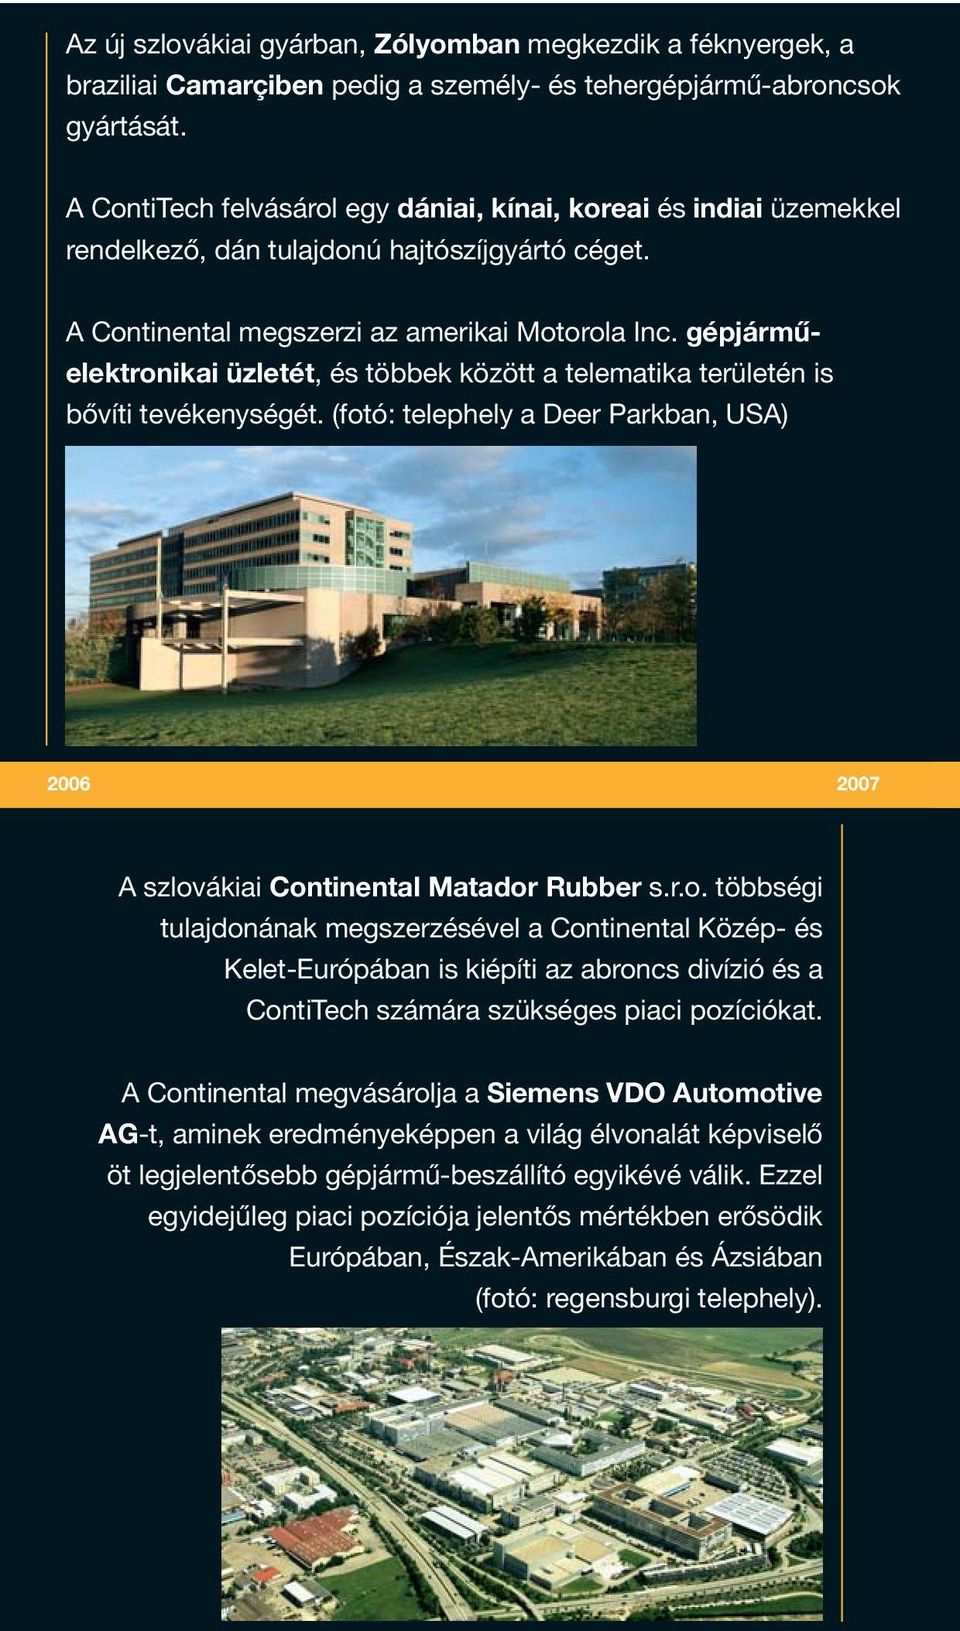 gépjárműelektronikai üzletét, és többek között a telematika területén is bővíti tevékenységét. (fotó: telephely a Deer Parkban, USA) 2006 2007 A szlovákiai Continental Matador Rubber s.r.o. többségi tulajdonának megszerzésével a Continental Közép- és Kelet-Európában is kiépíti az abroncs divízió és a ContiTech számára szükséges piaci pozíciókat.